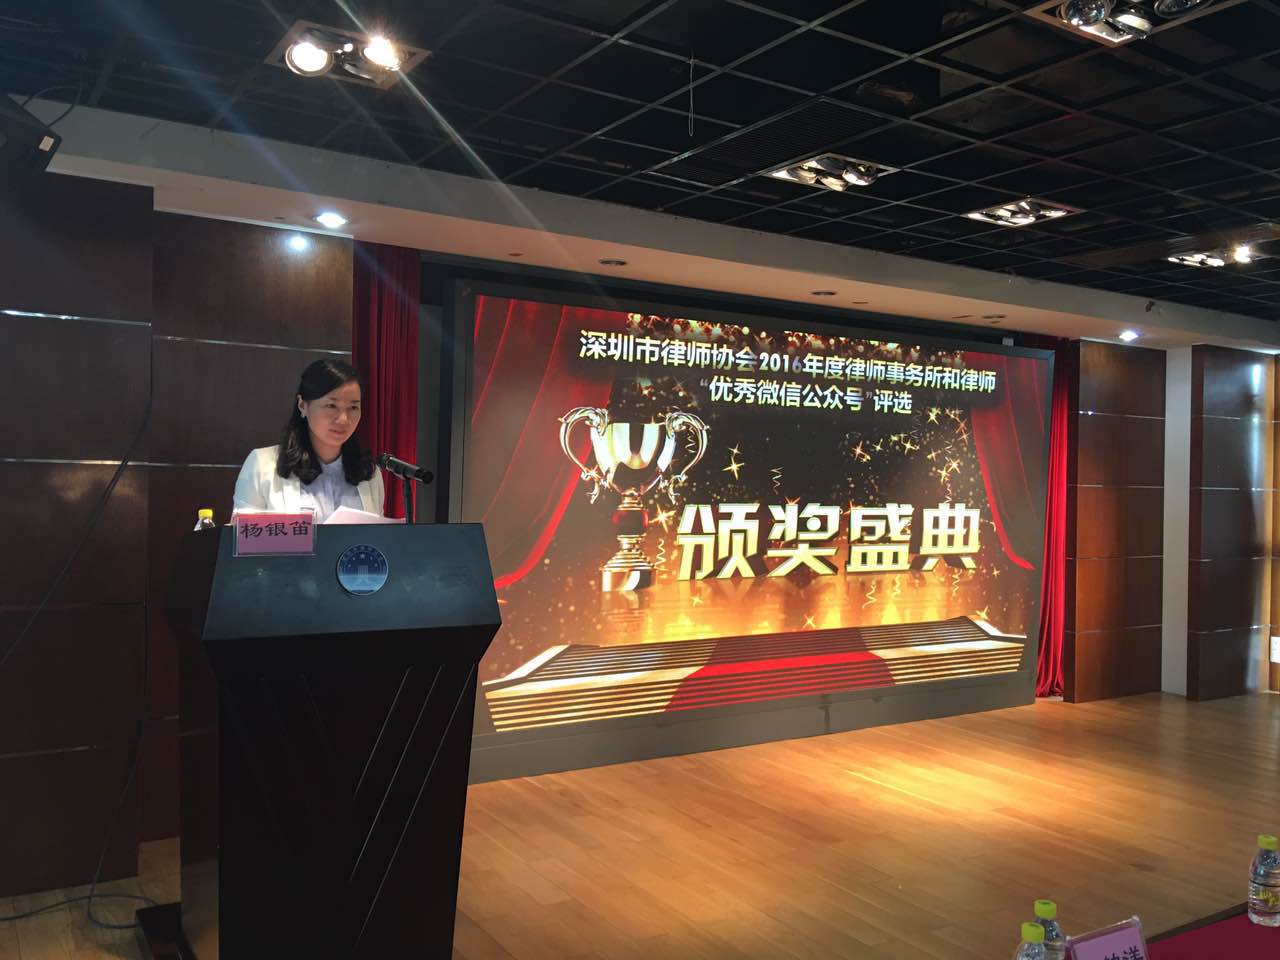 广东金美律师事务所杨银笛律师受邀主持深圳市律师协会 2016年度优秀微信公众号颁奖典礼